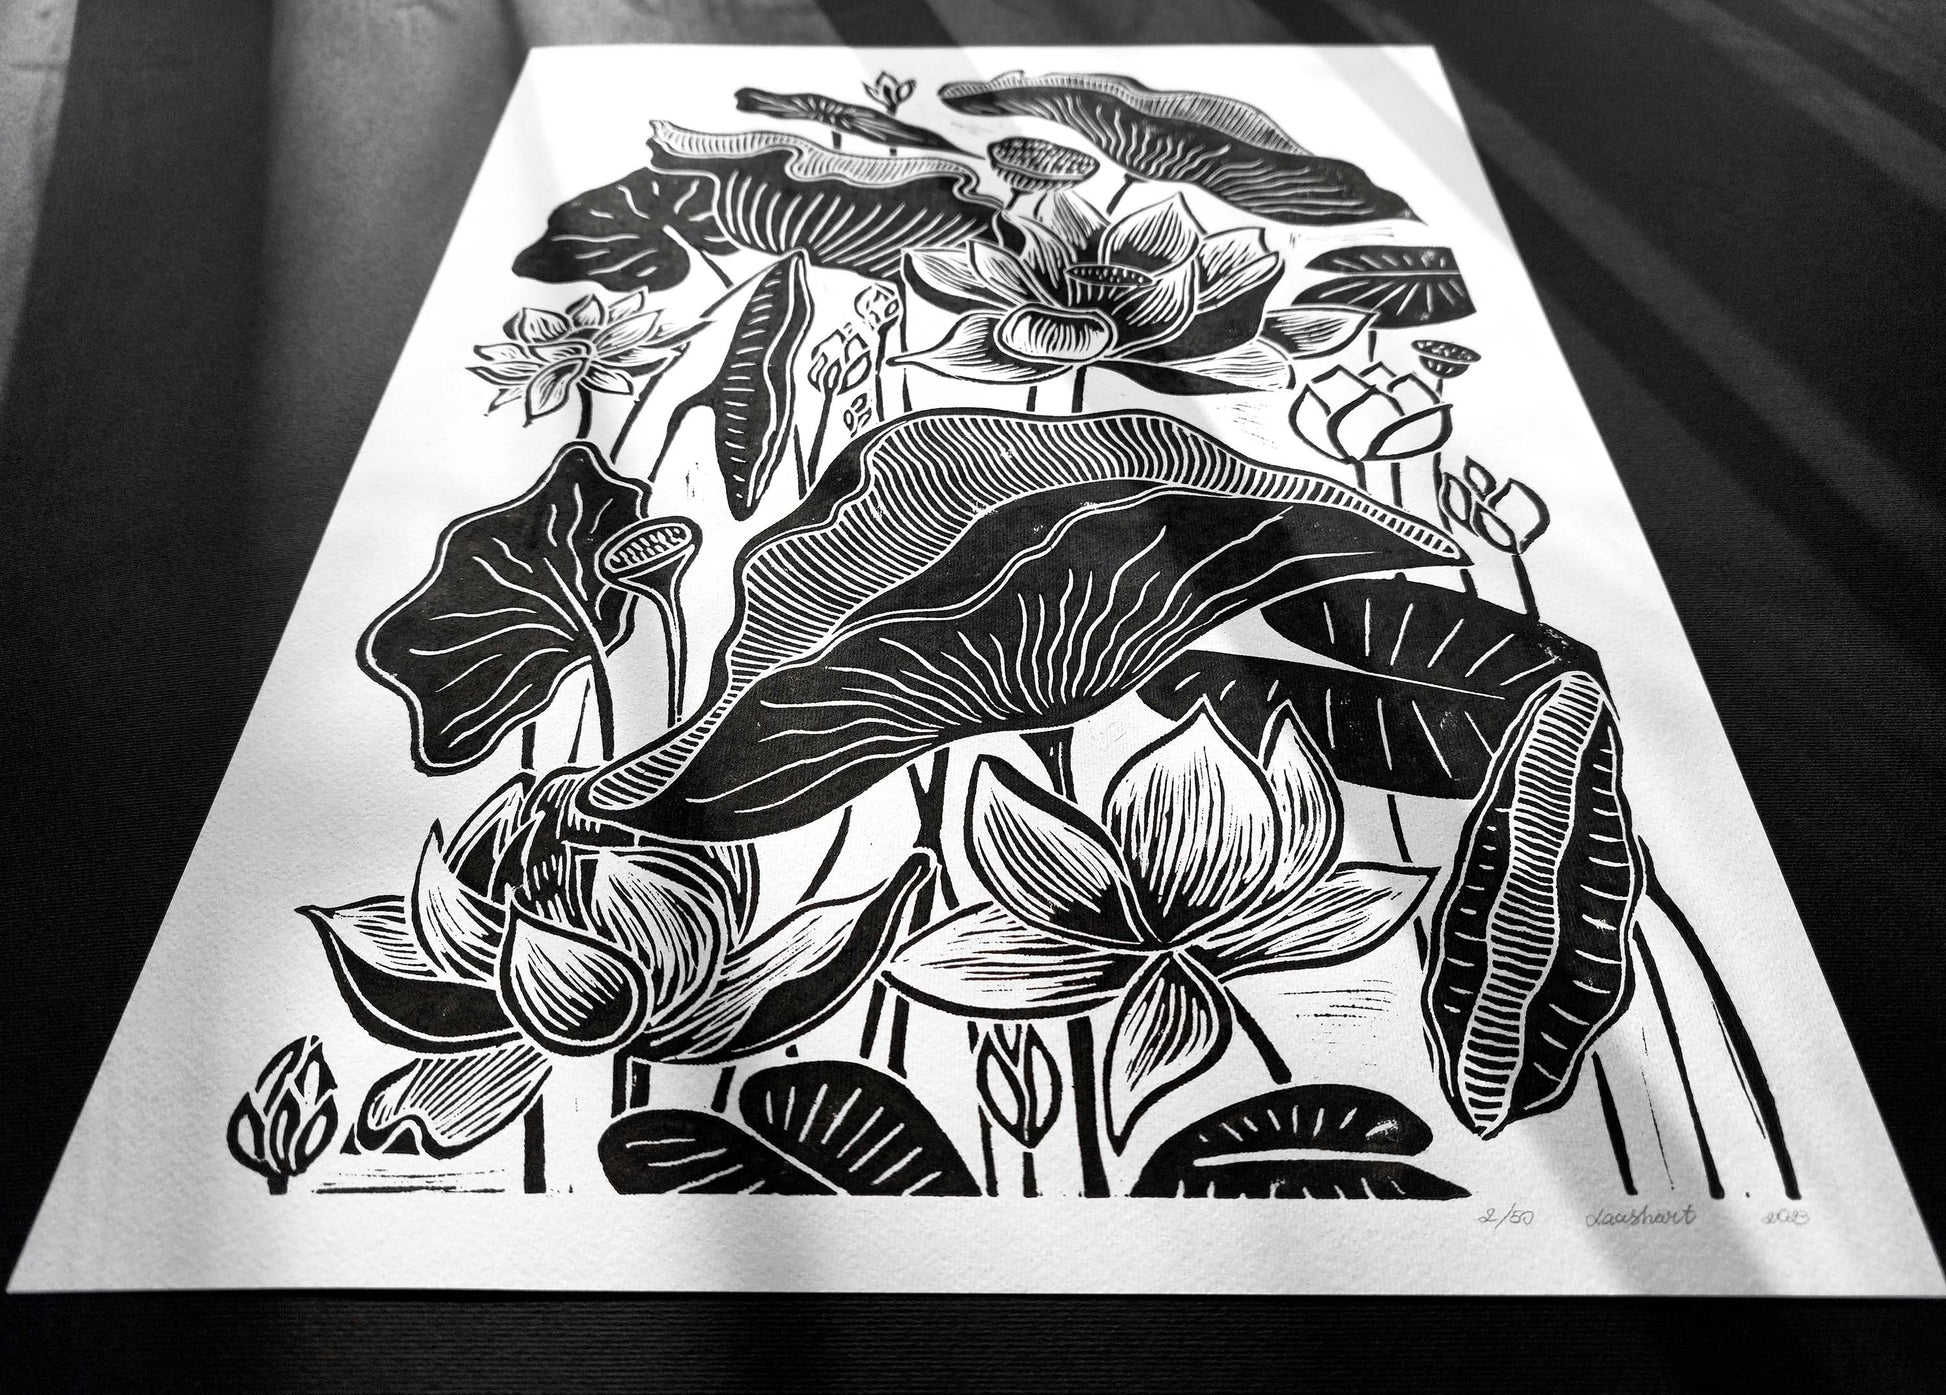 Green lotus flower Linocut print for Nature lover gift UNFRAMED – daashart